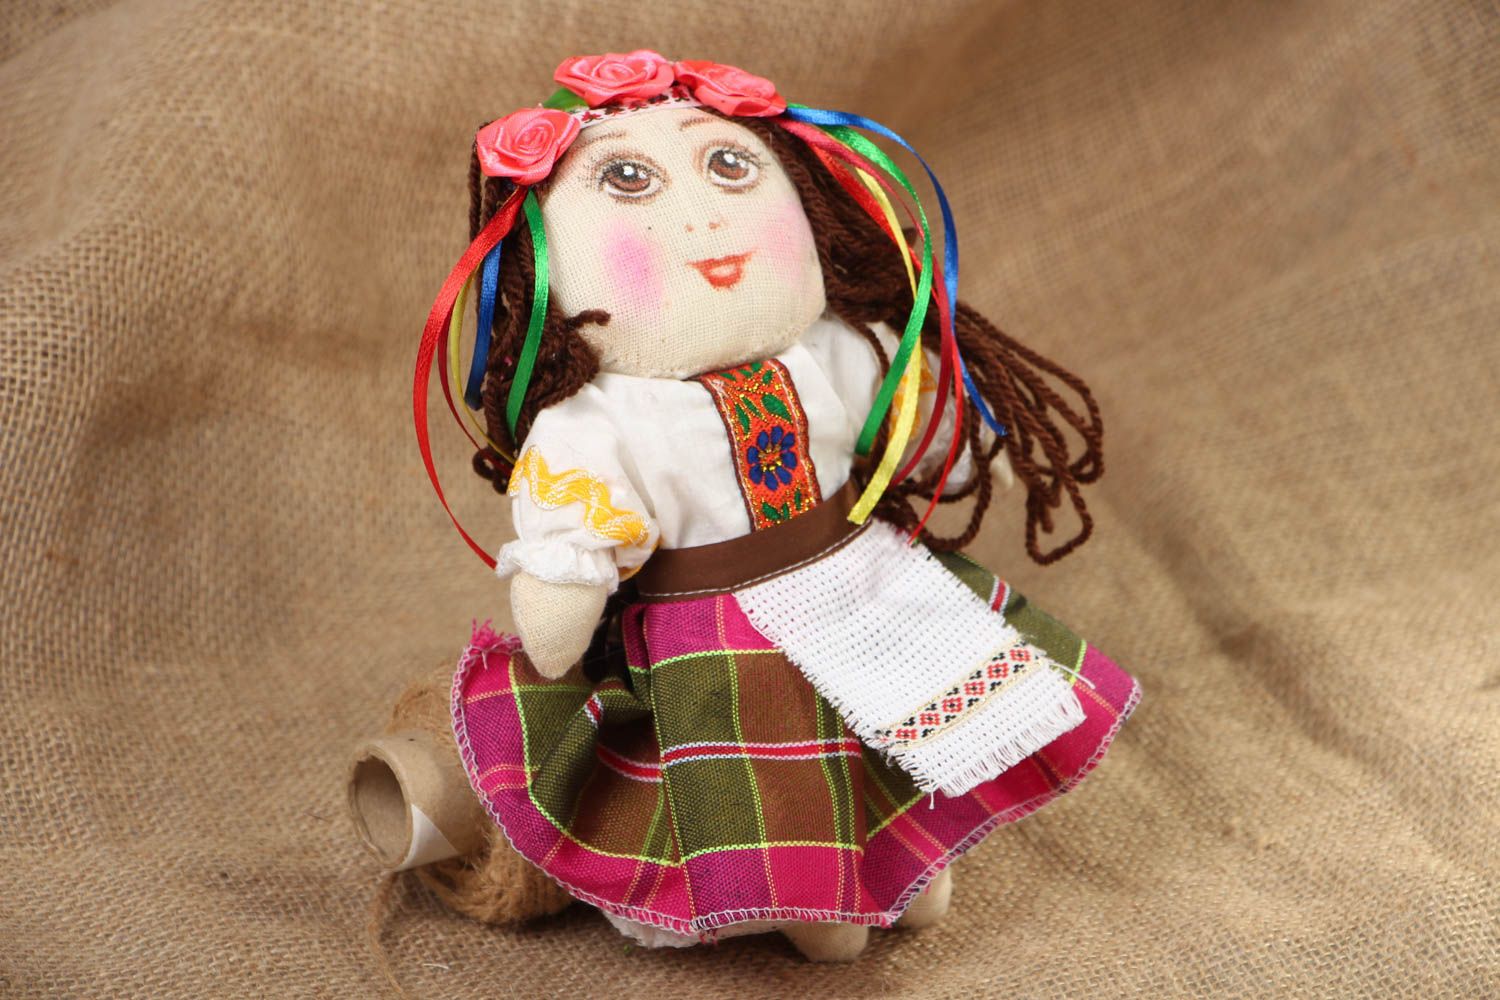 Textil Puppe handmade Ukrainerin foto 5